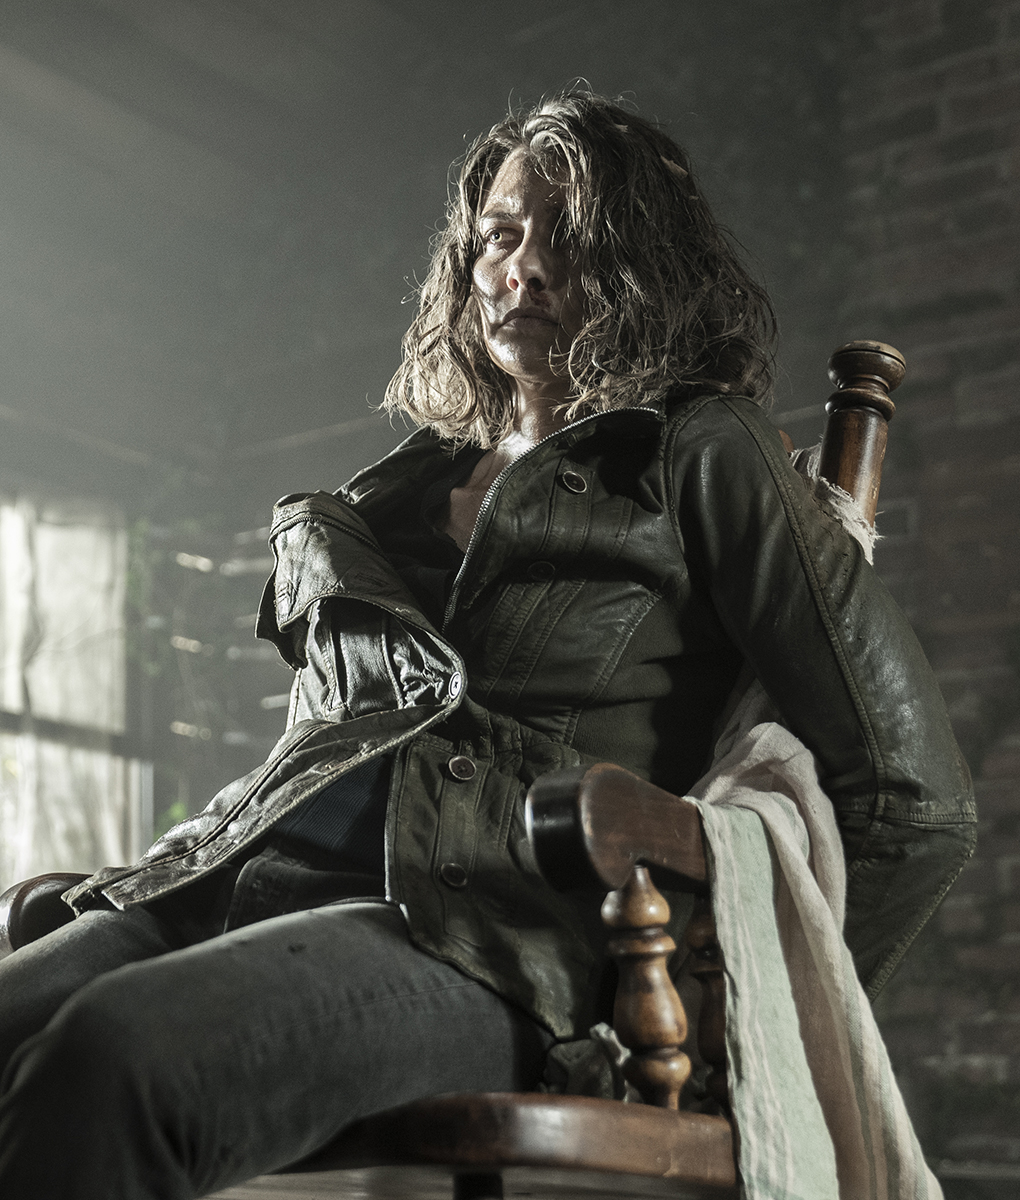 The Walking Dead Lauren Cohan Brown Jacket